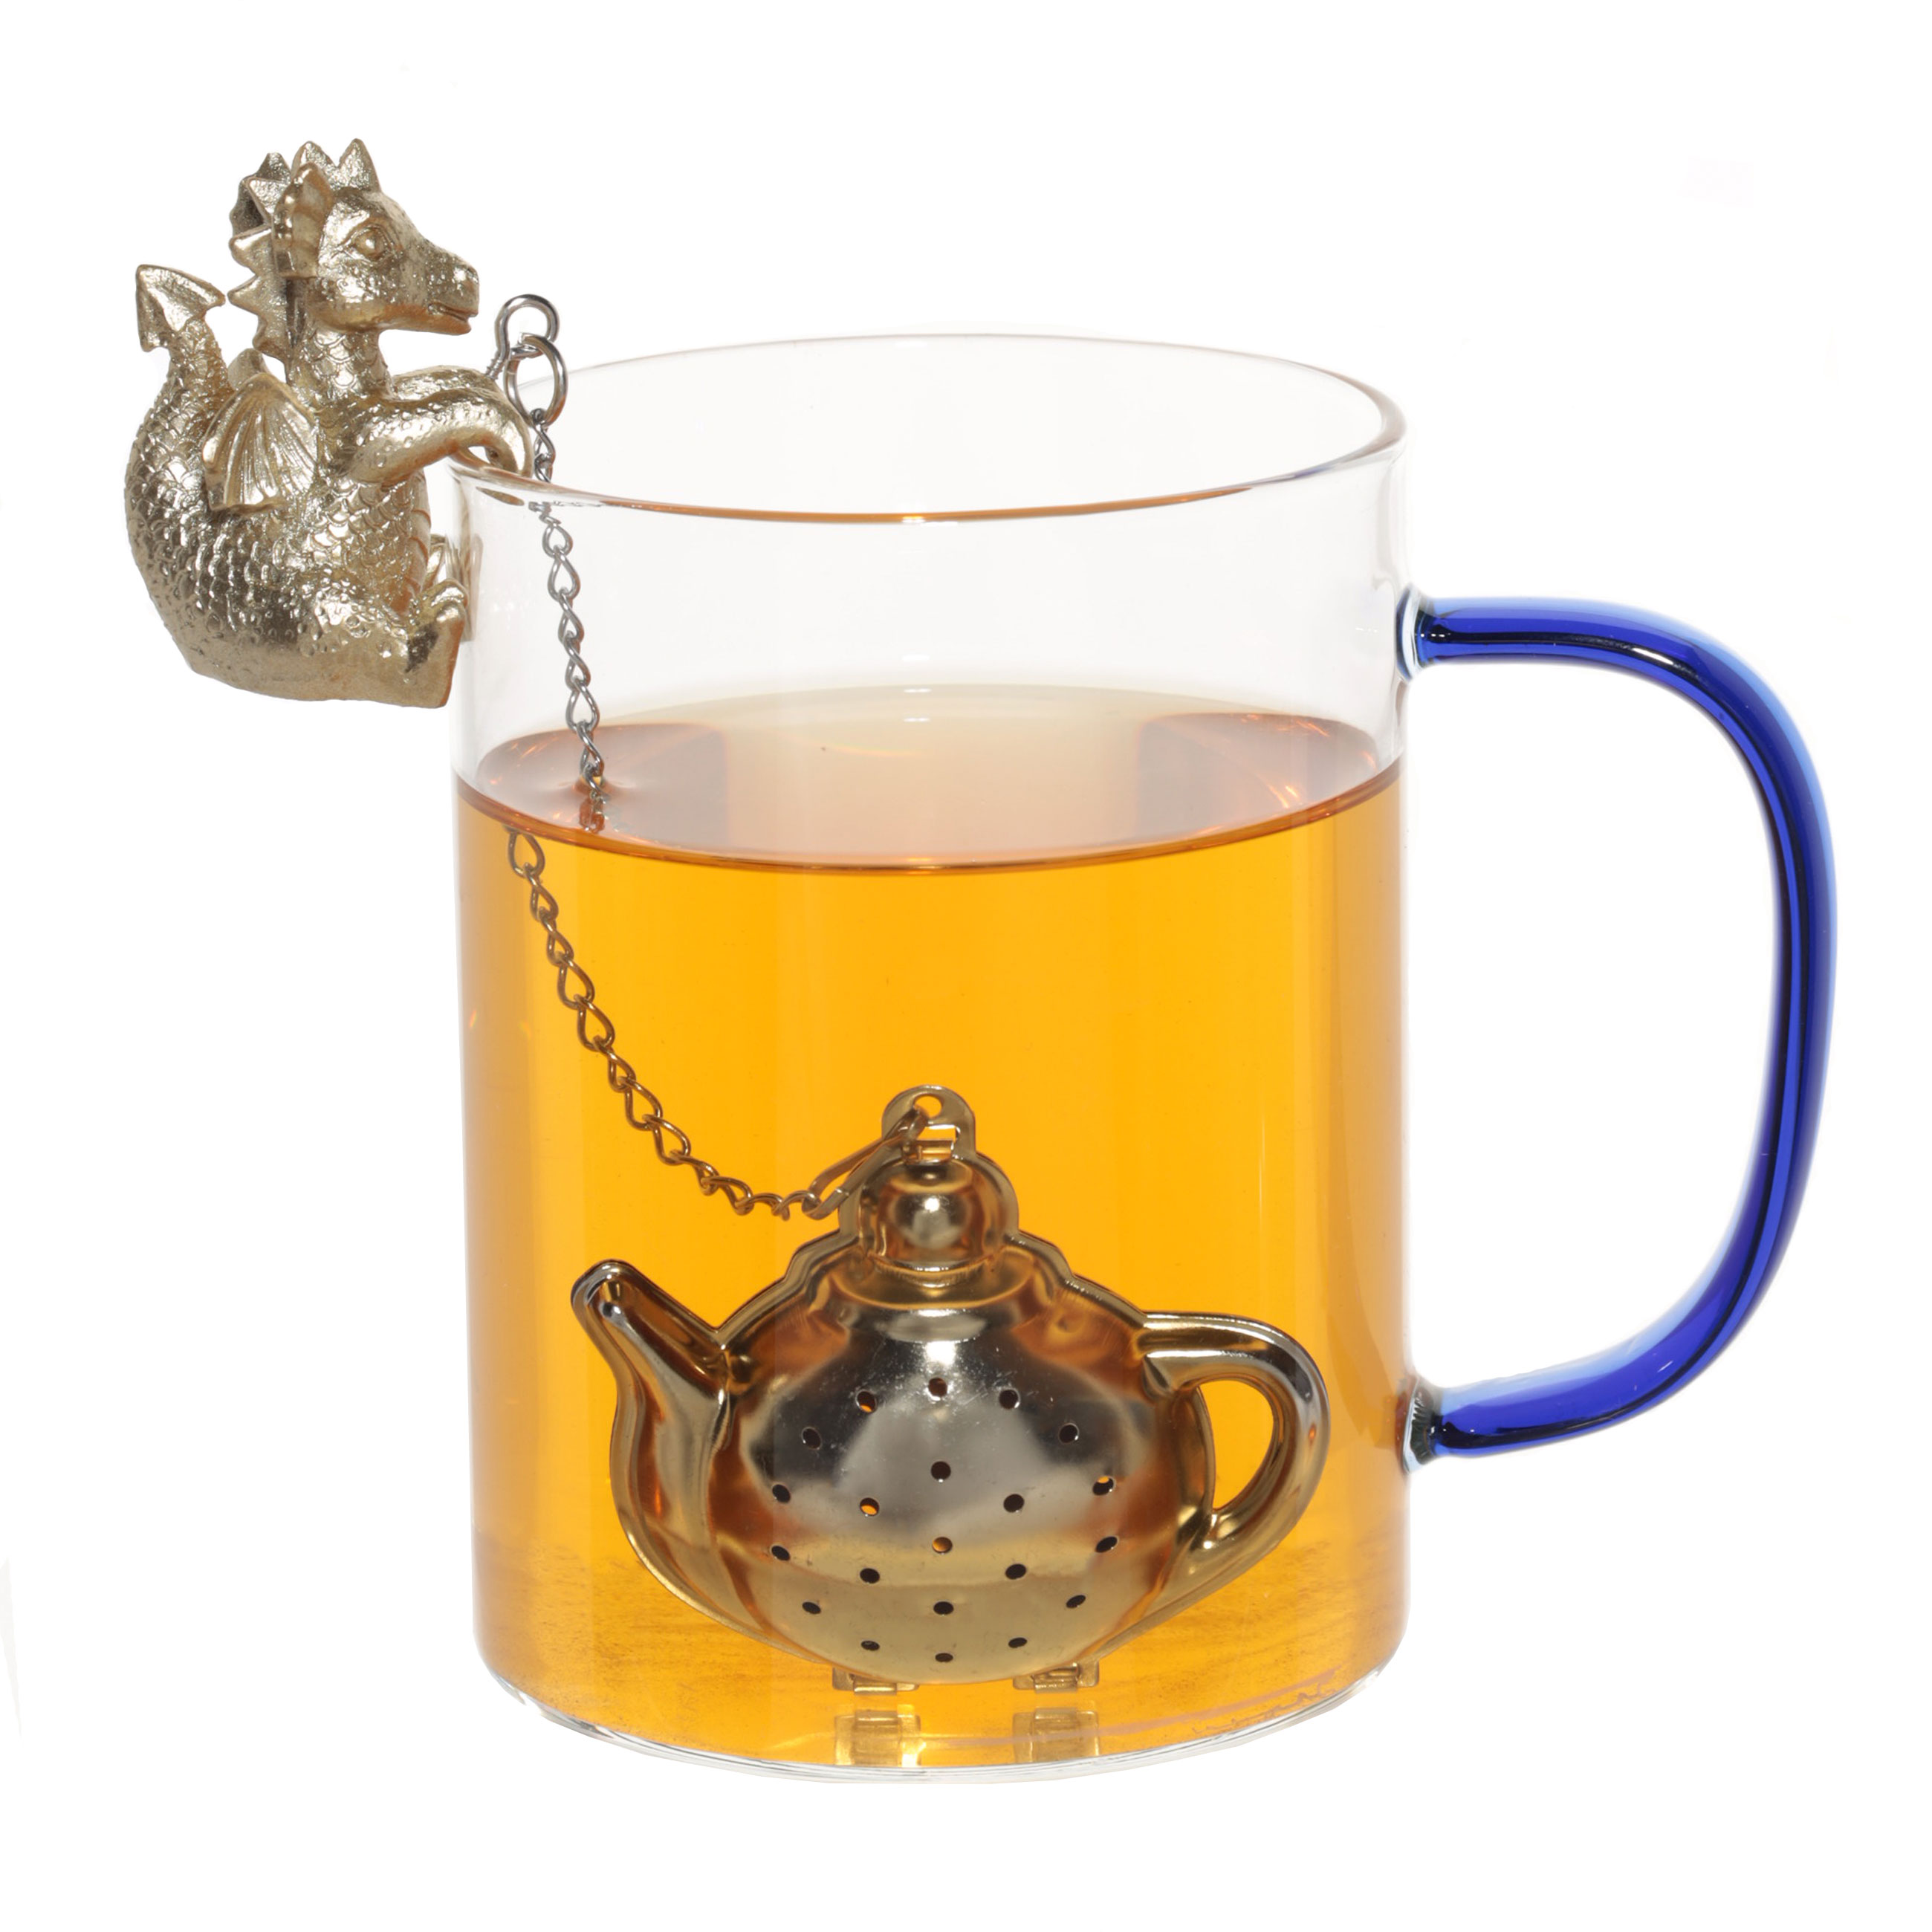 Сито для заваривания чая, 18 см, сталь/полирезин, золотисто-серебристое, Дракон, Dragon cute изображение № 2